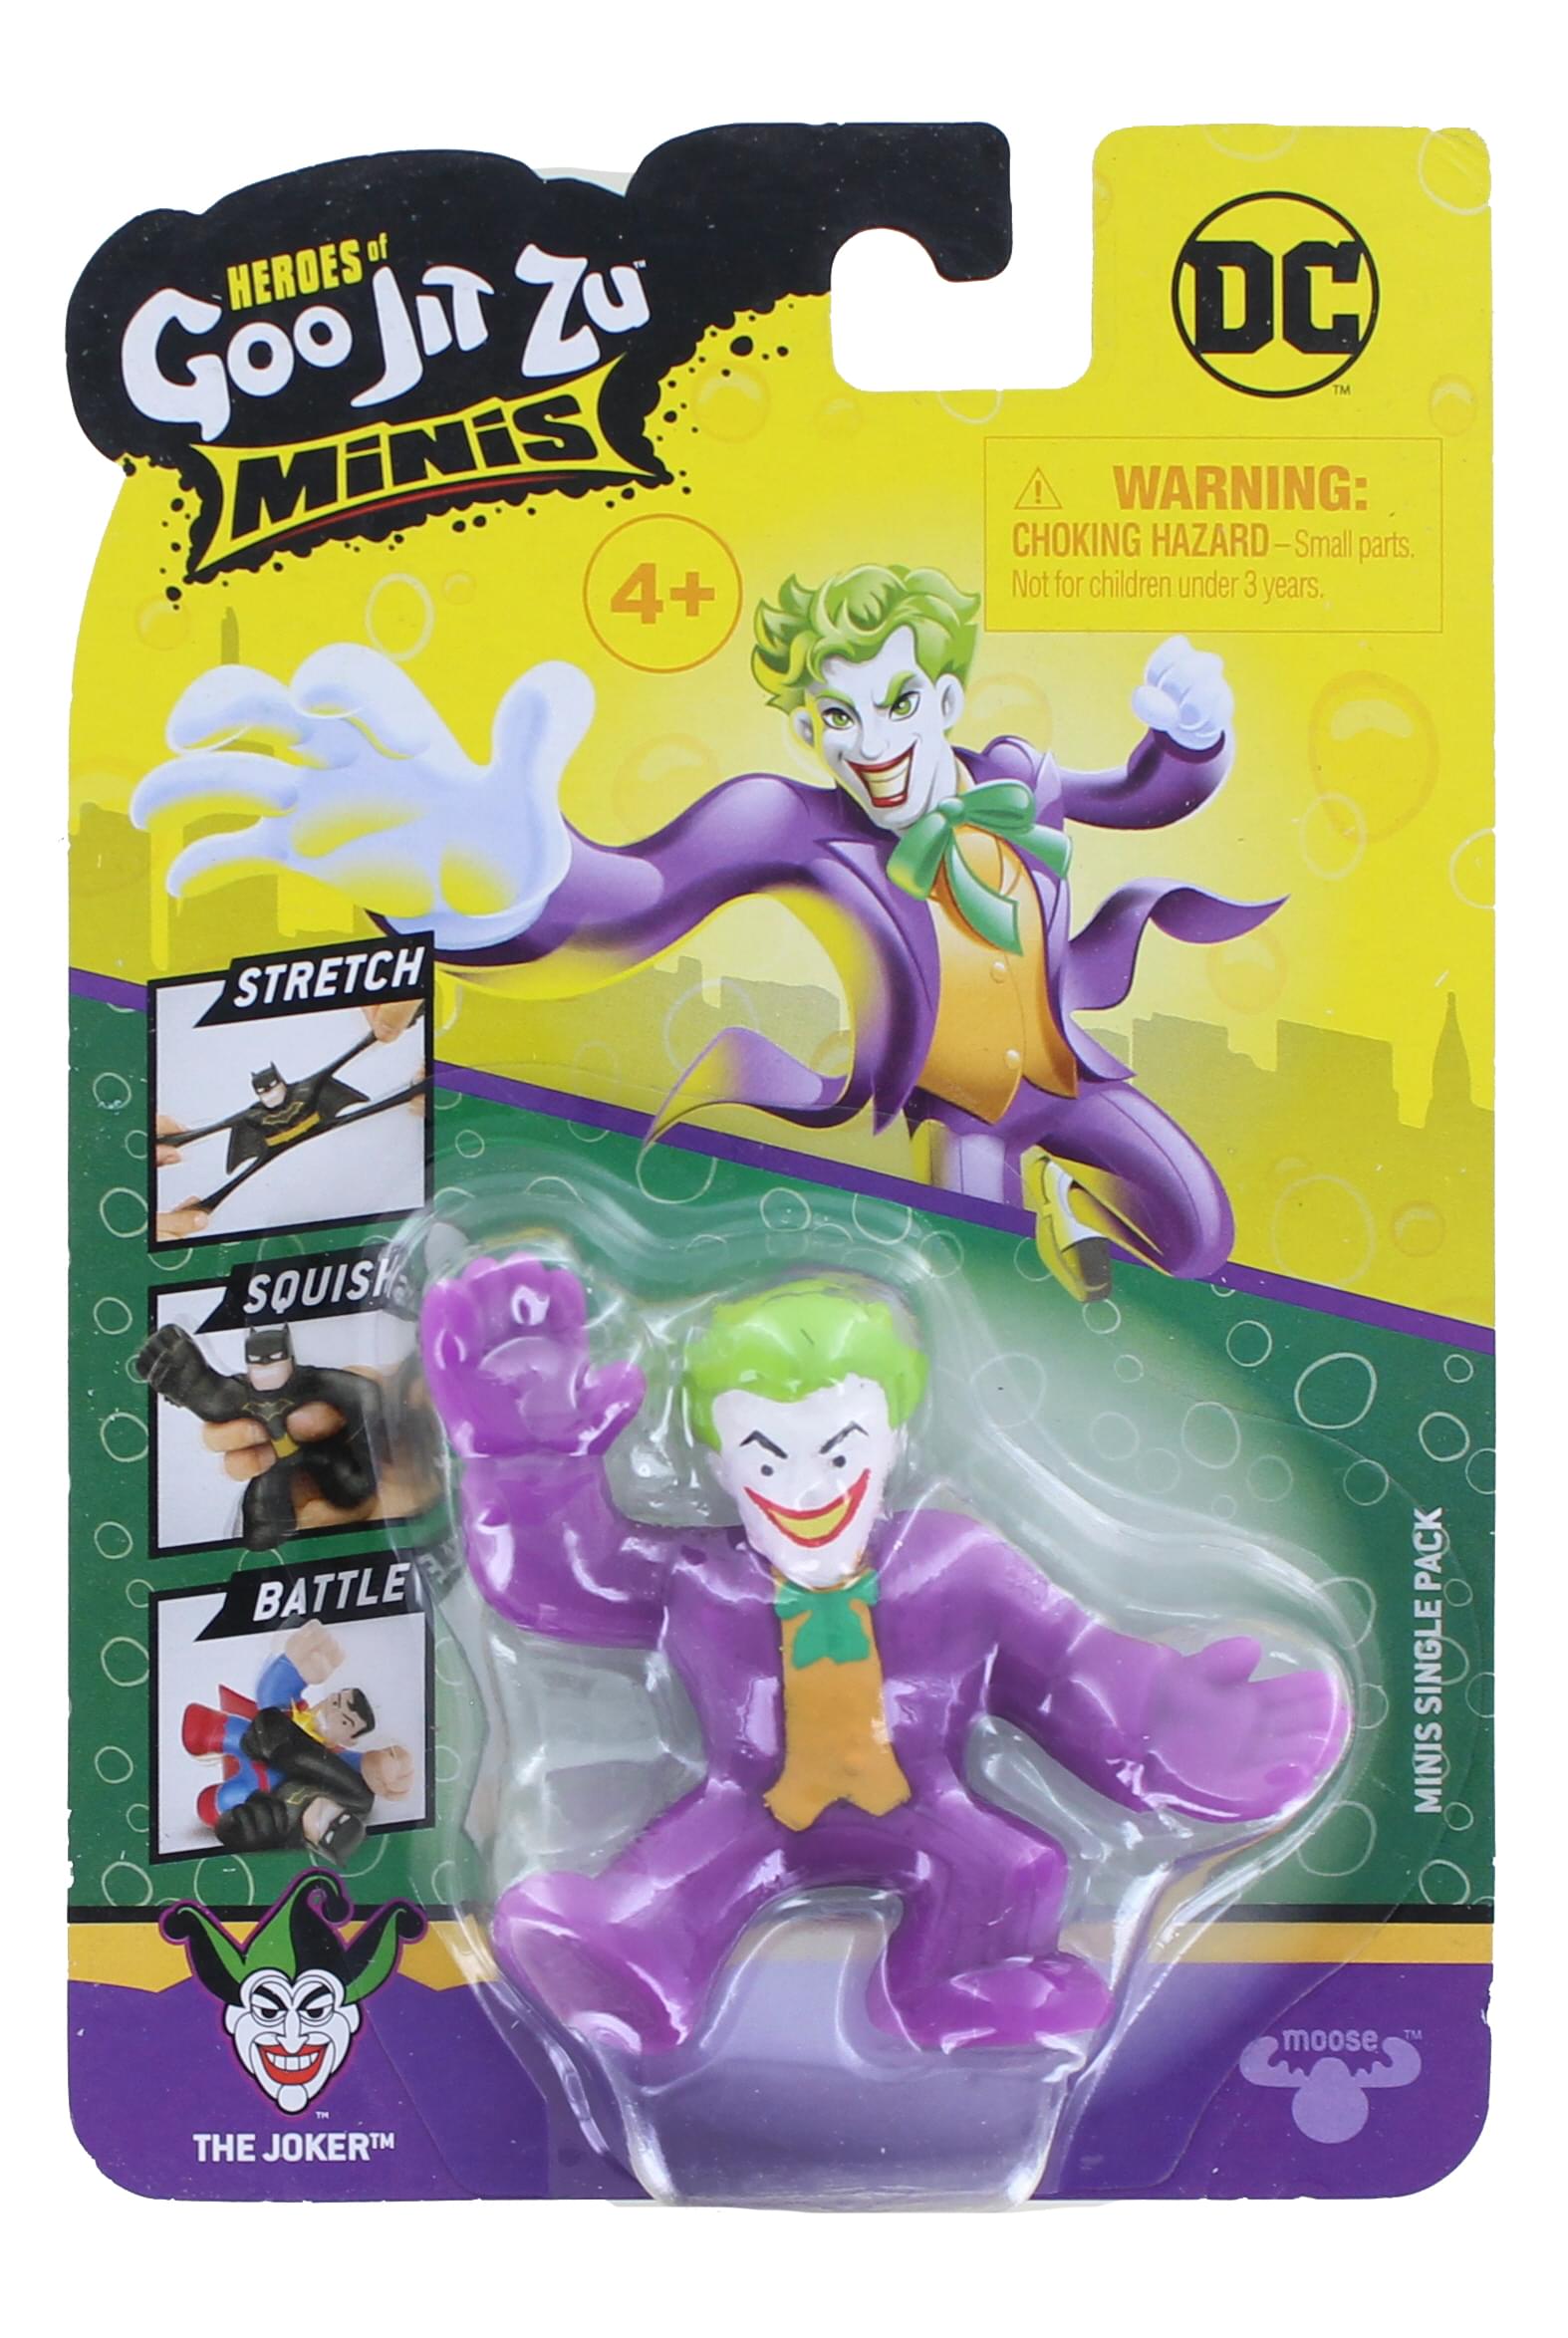 DC Heroes Of Goo Jit Zu Squishy Mini Figure , The Joker